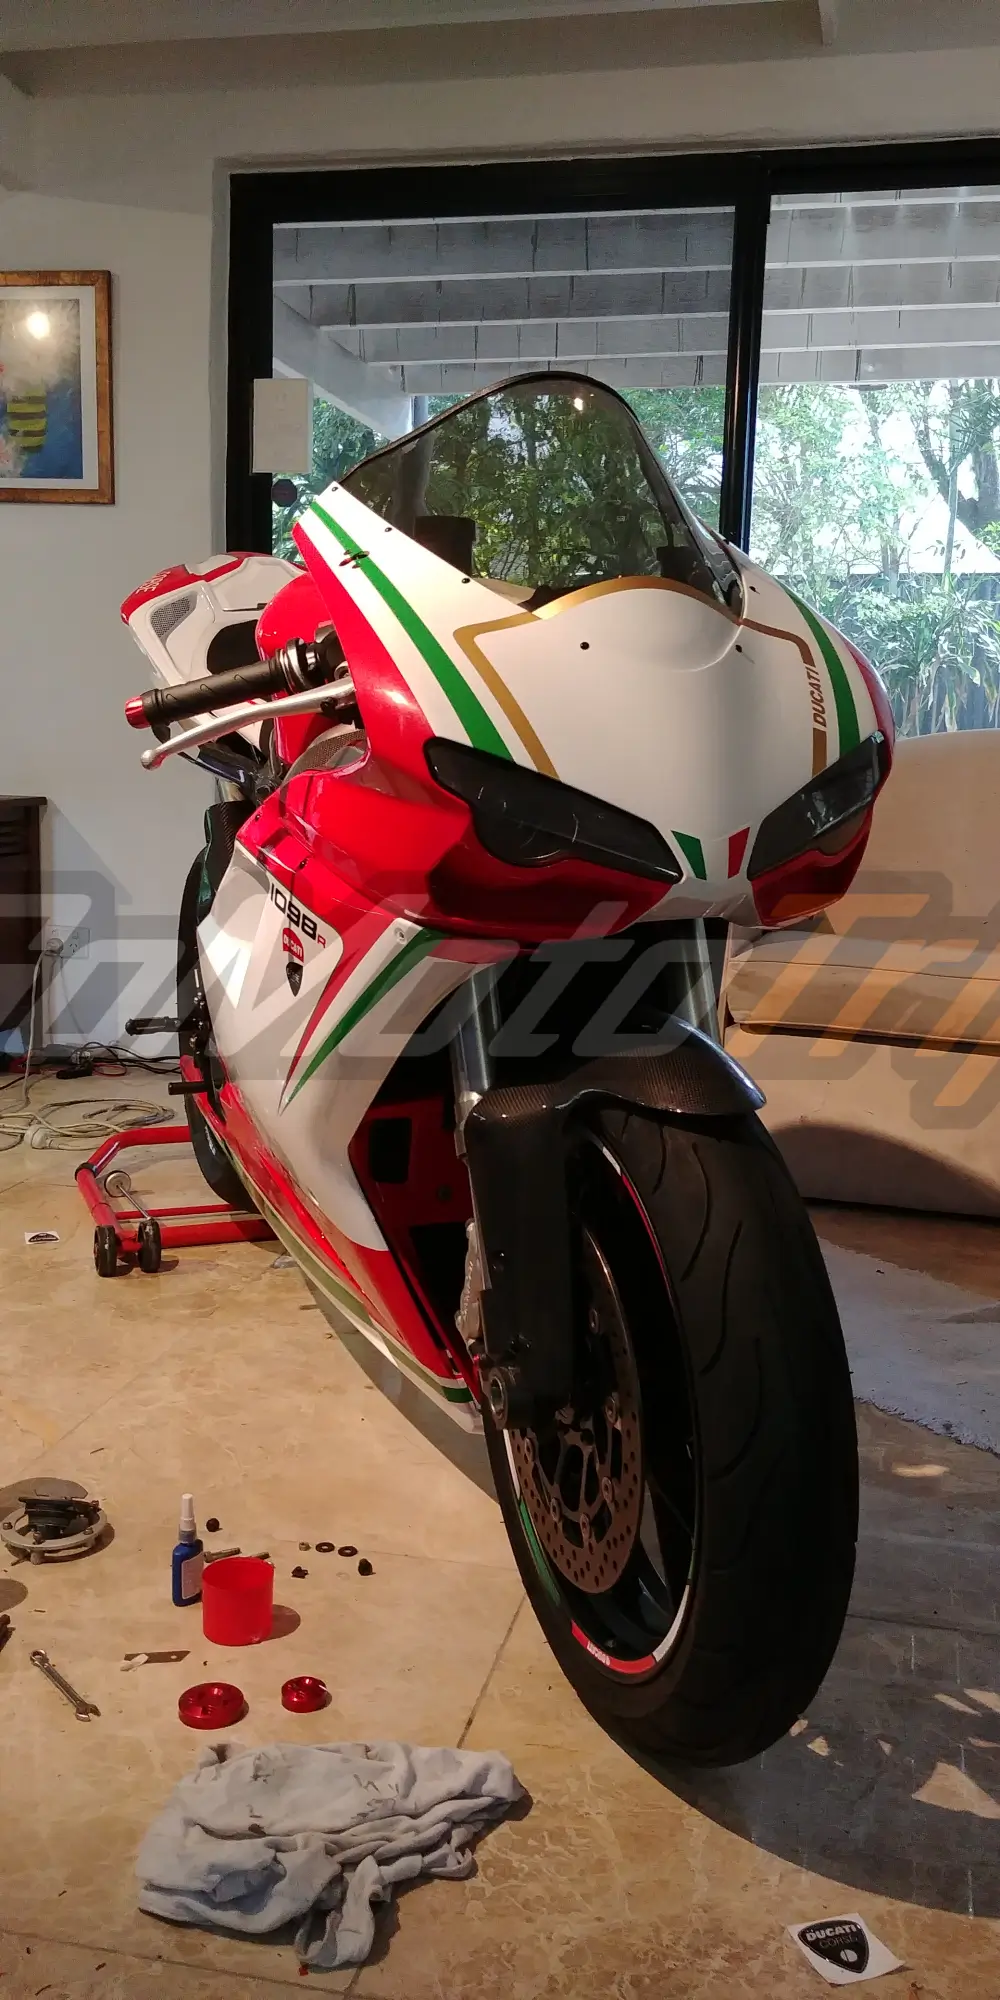 Rider-Review-Karlo-Ducati-1098-R-Corse-Fairing-2